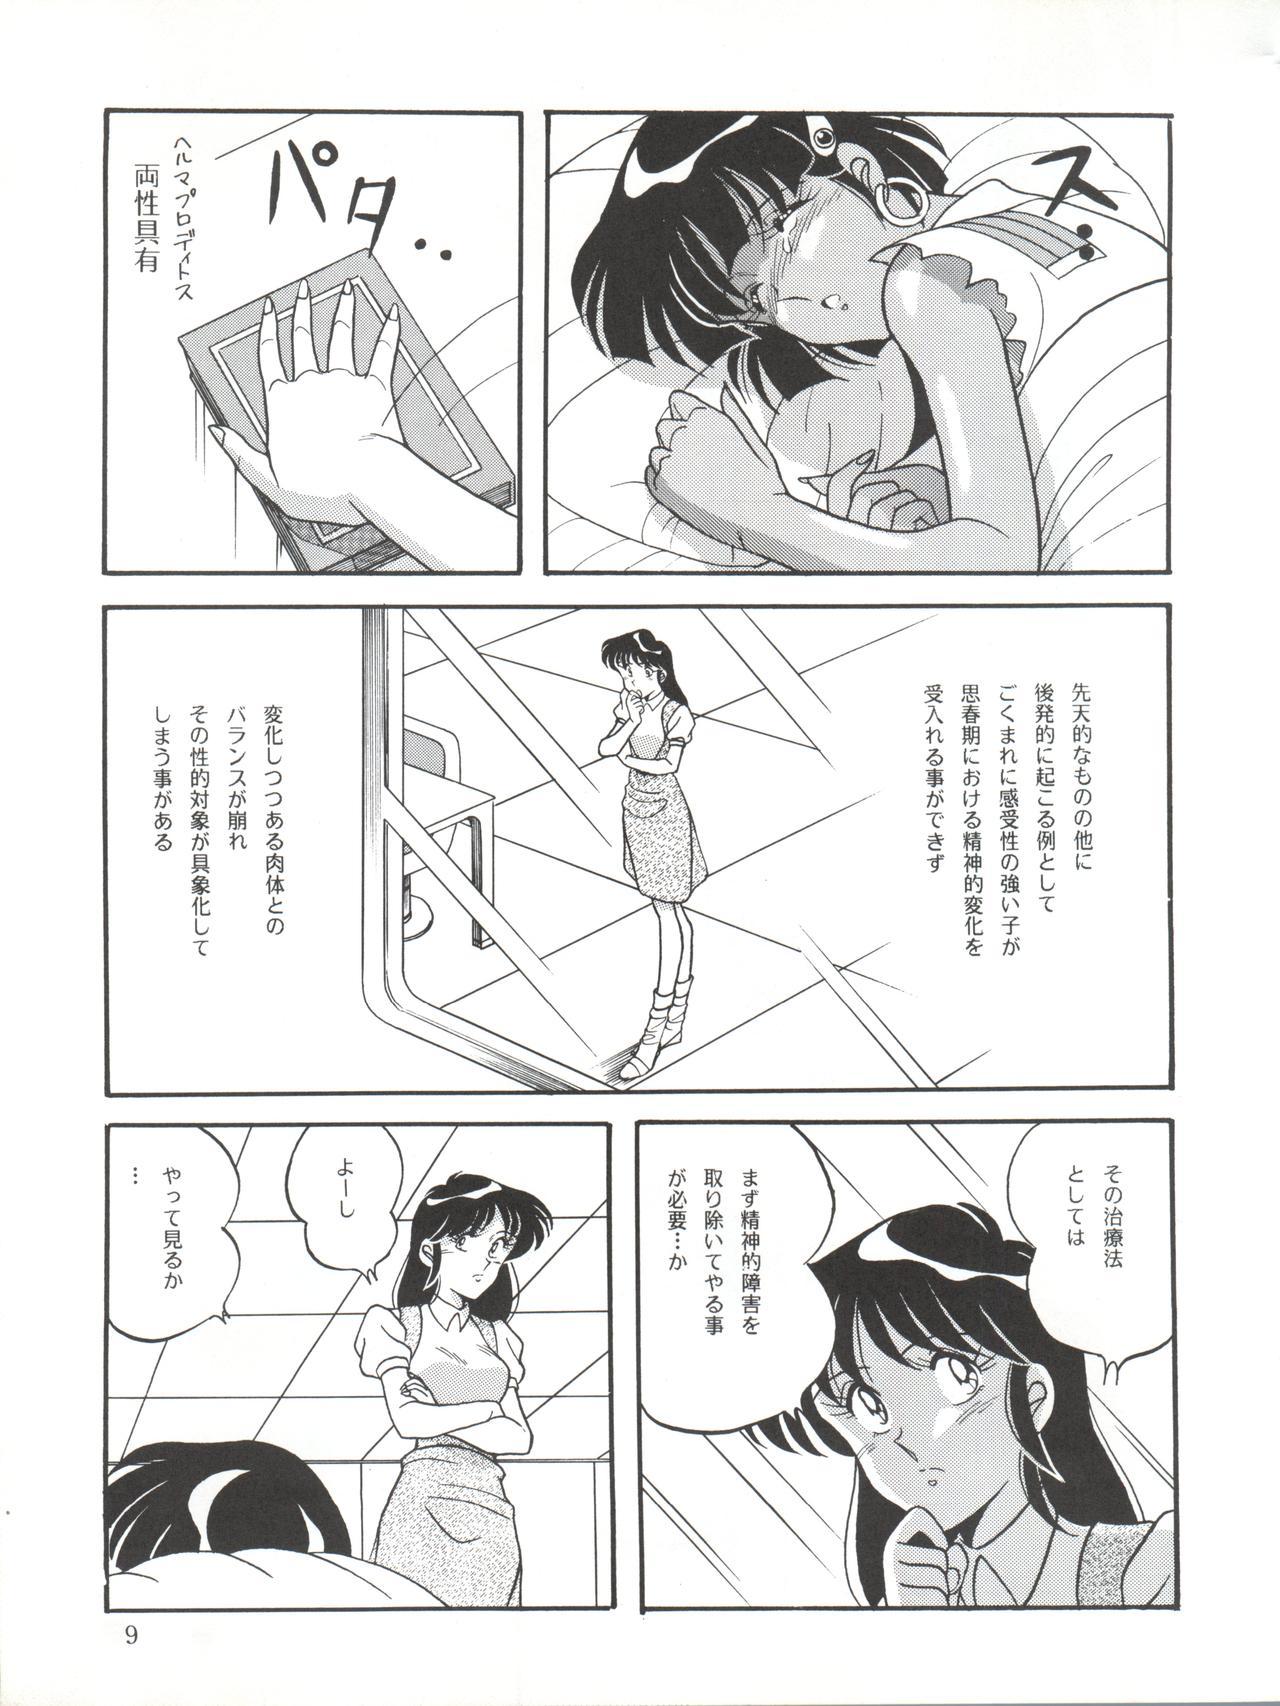 Lingerie Vocalization 2 - Fushigi no umi no nadia Collar - Page 9